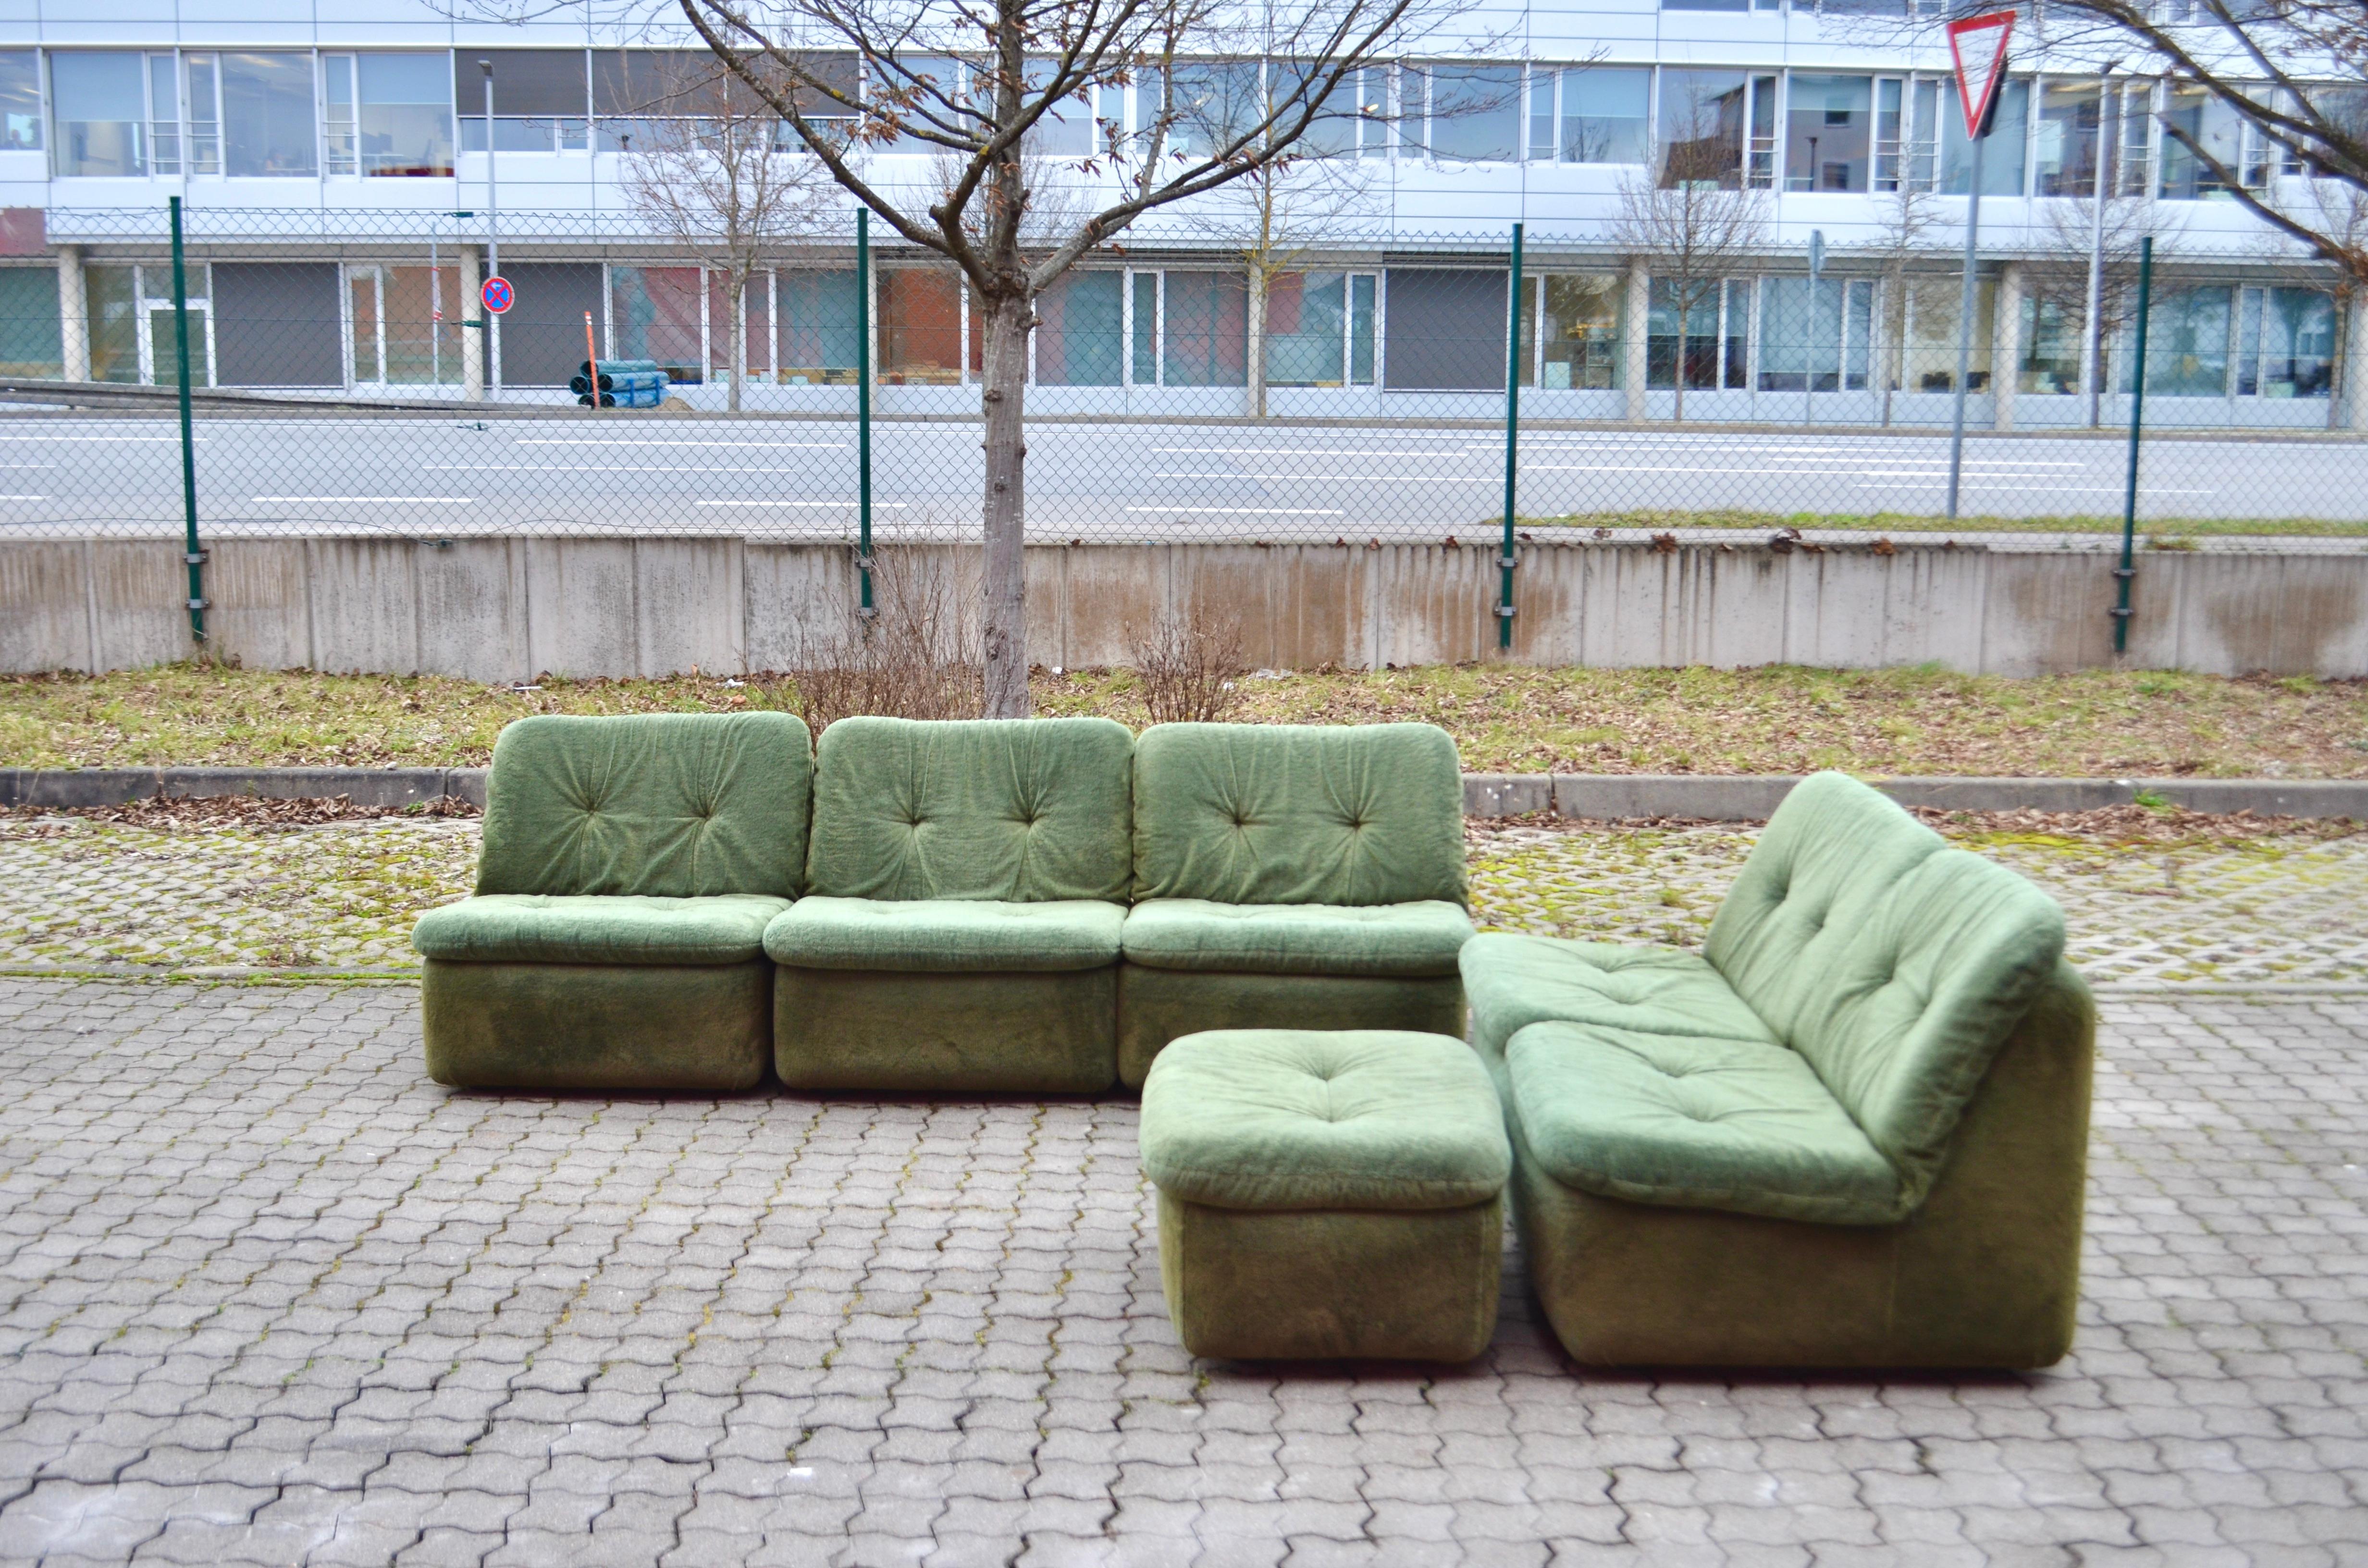 Dies ist ein seltenes und atemberaubendes Modular-Sectional-Sofa, entworfen von  Jo Otterpohl  im Jahr 1969 für den deutschen Hersteller COR.
Es ist ein reines 70er-Jahre-Design.
Es besteht aus 5 Modulen mit losen Sitzkissen.
Der Stoff ist weich 